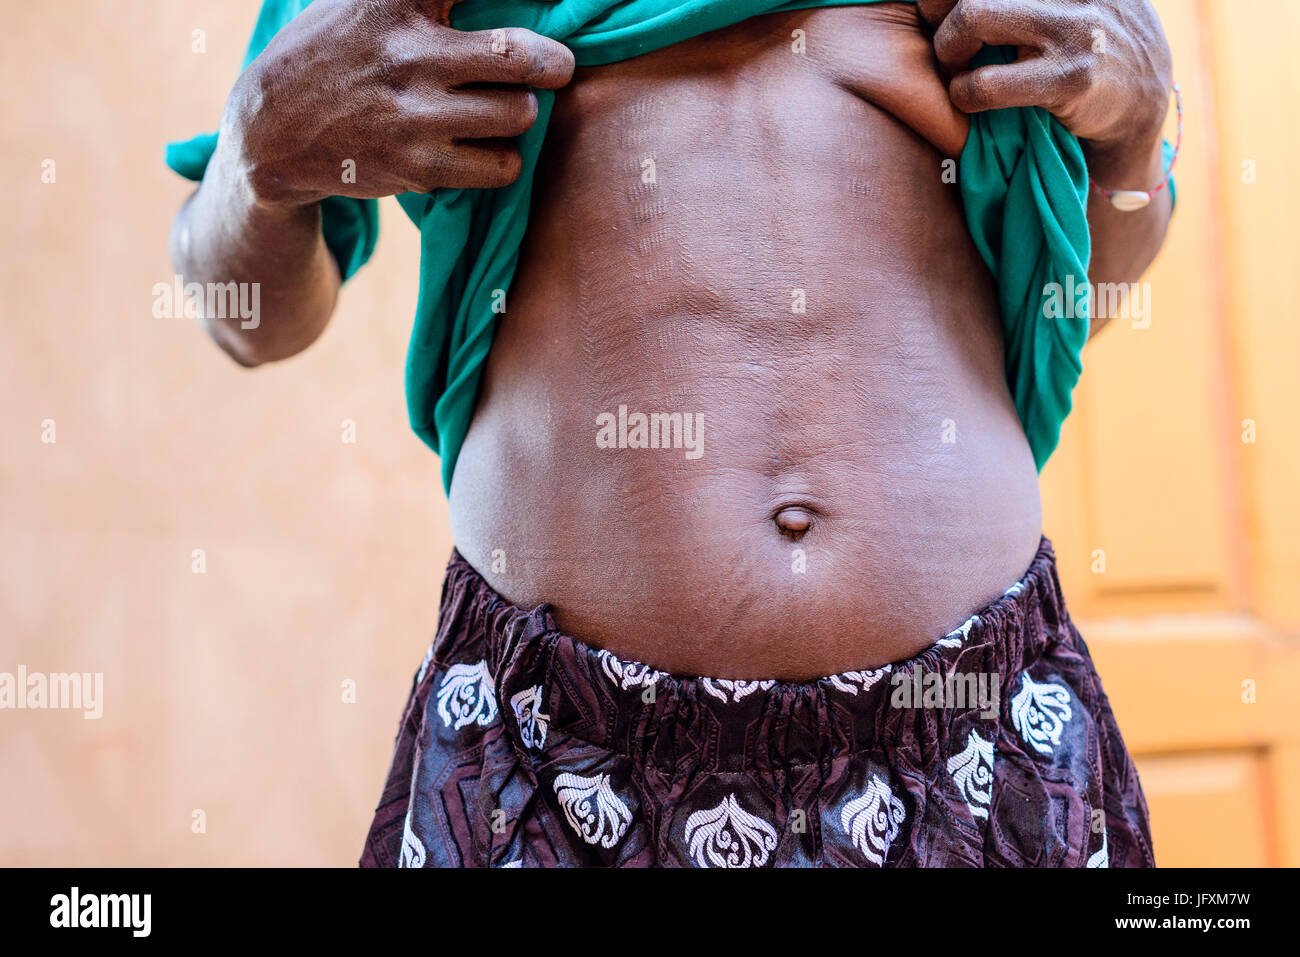 Somba people in Benin Stock Photo